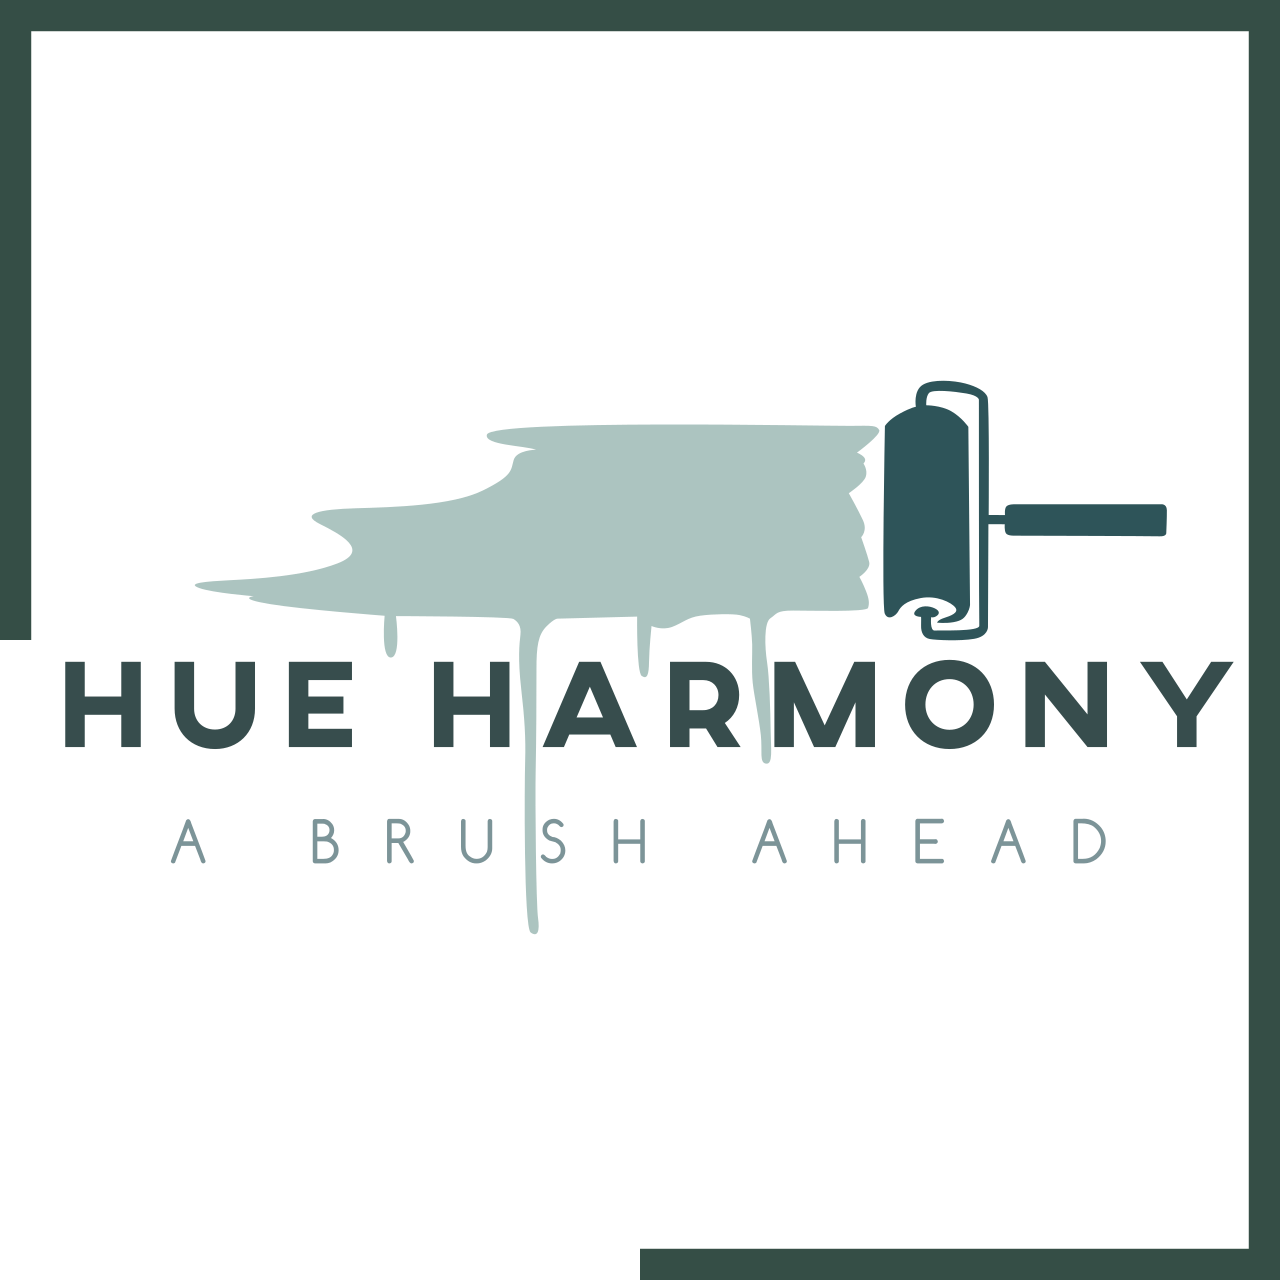 Hue Harmony 's logo